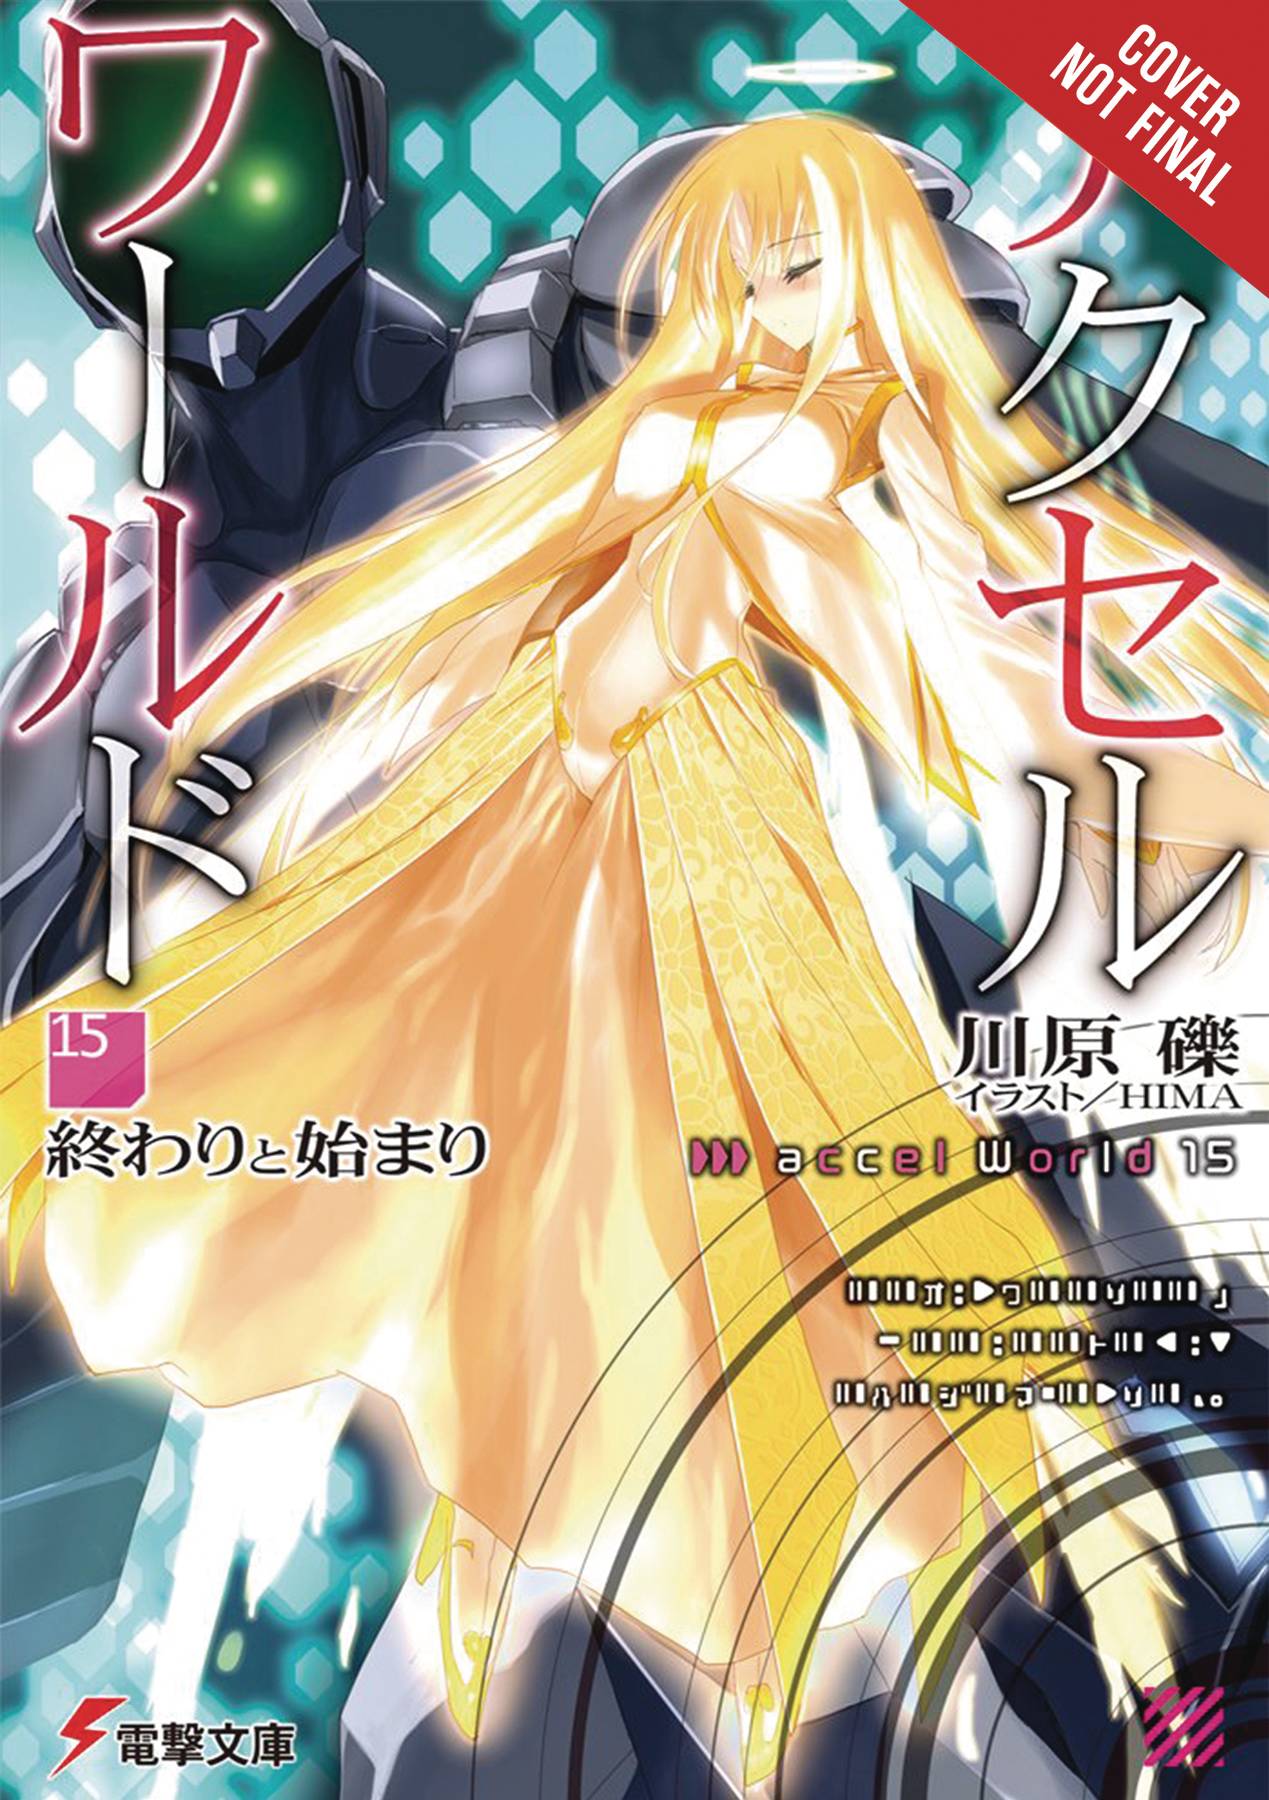 Accel World Light Novel Soft Cover Volume 15